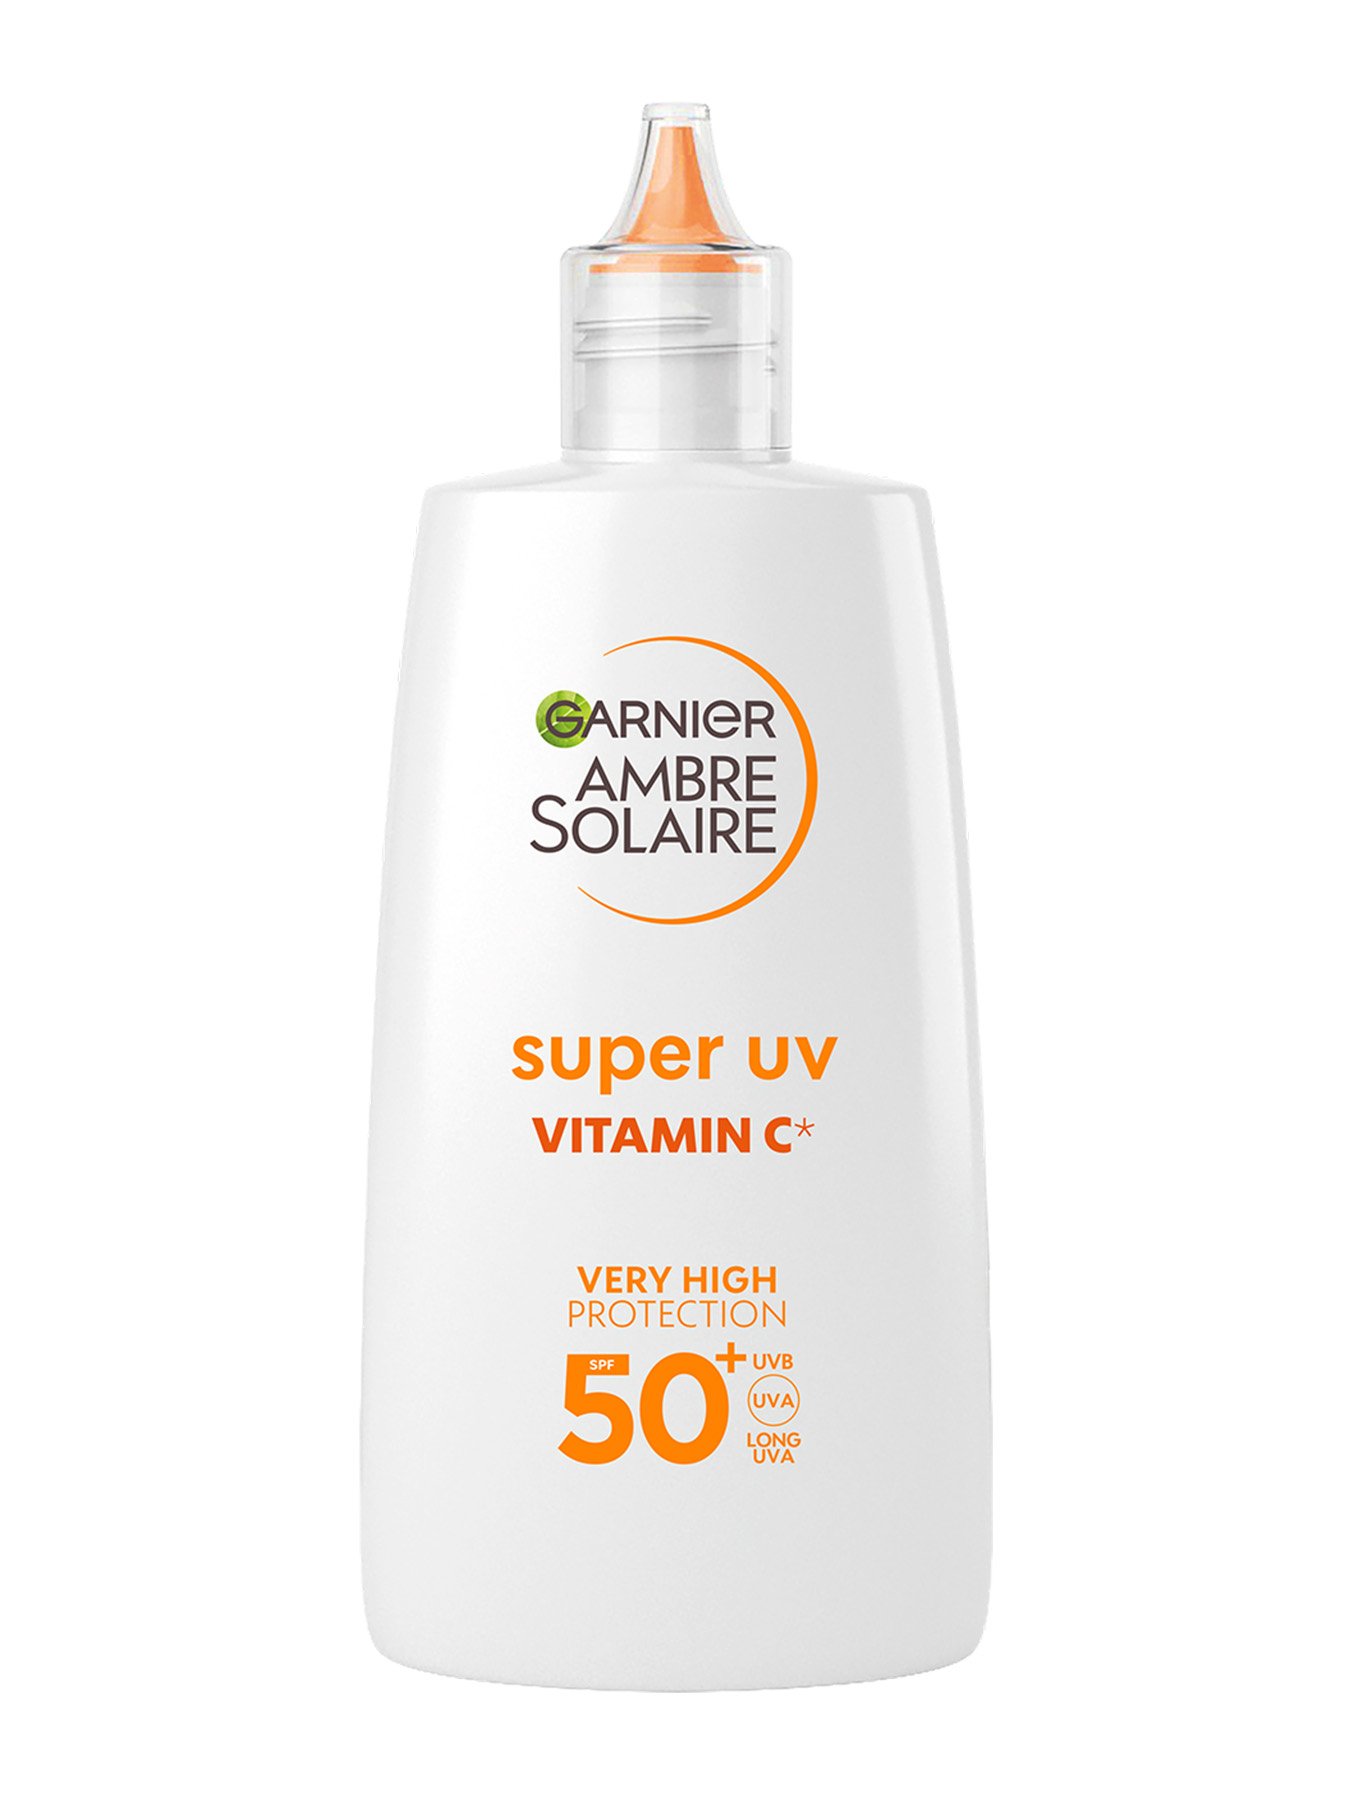 Garnier Ambre Solaire dnevni fluid protiv tamnih mrlja s vitaminom C* i vrlo visokom UV zaštitom SPF 50+